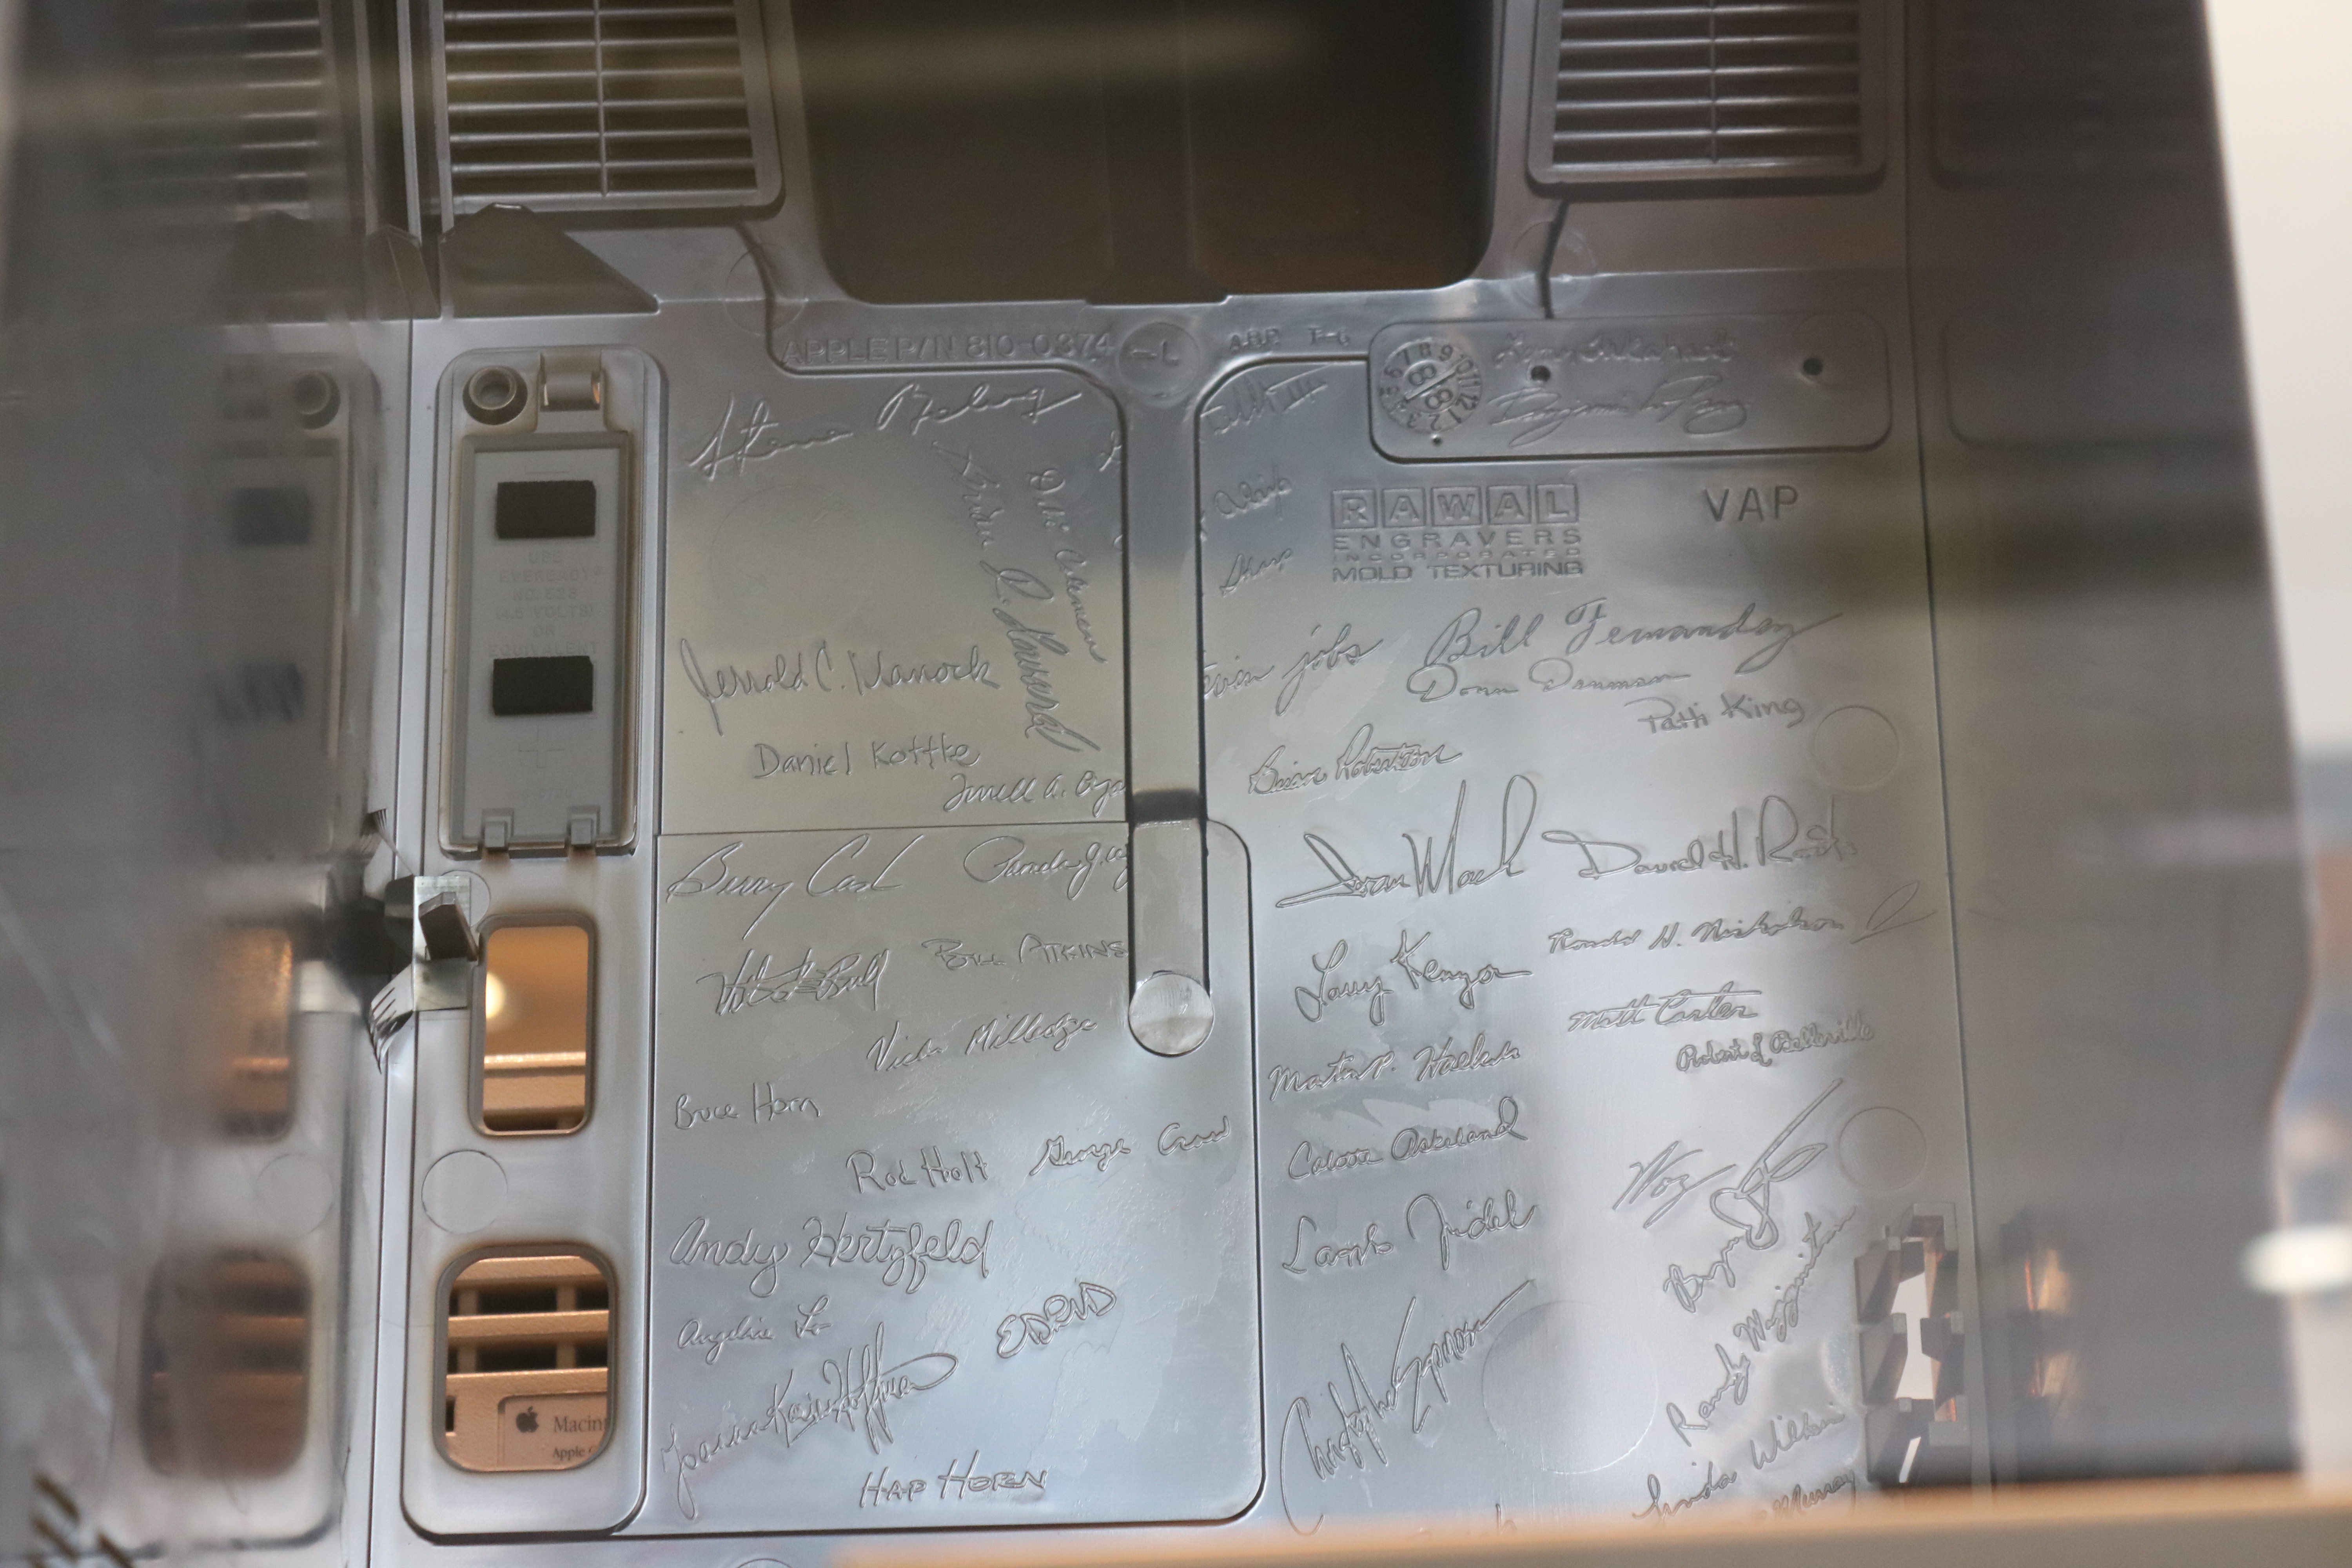 Firmas del equipo Macintosh en el interior de las carcasas de los primeros equipos